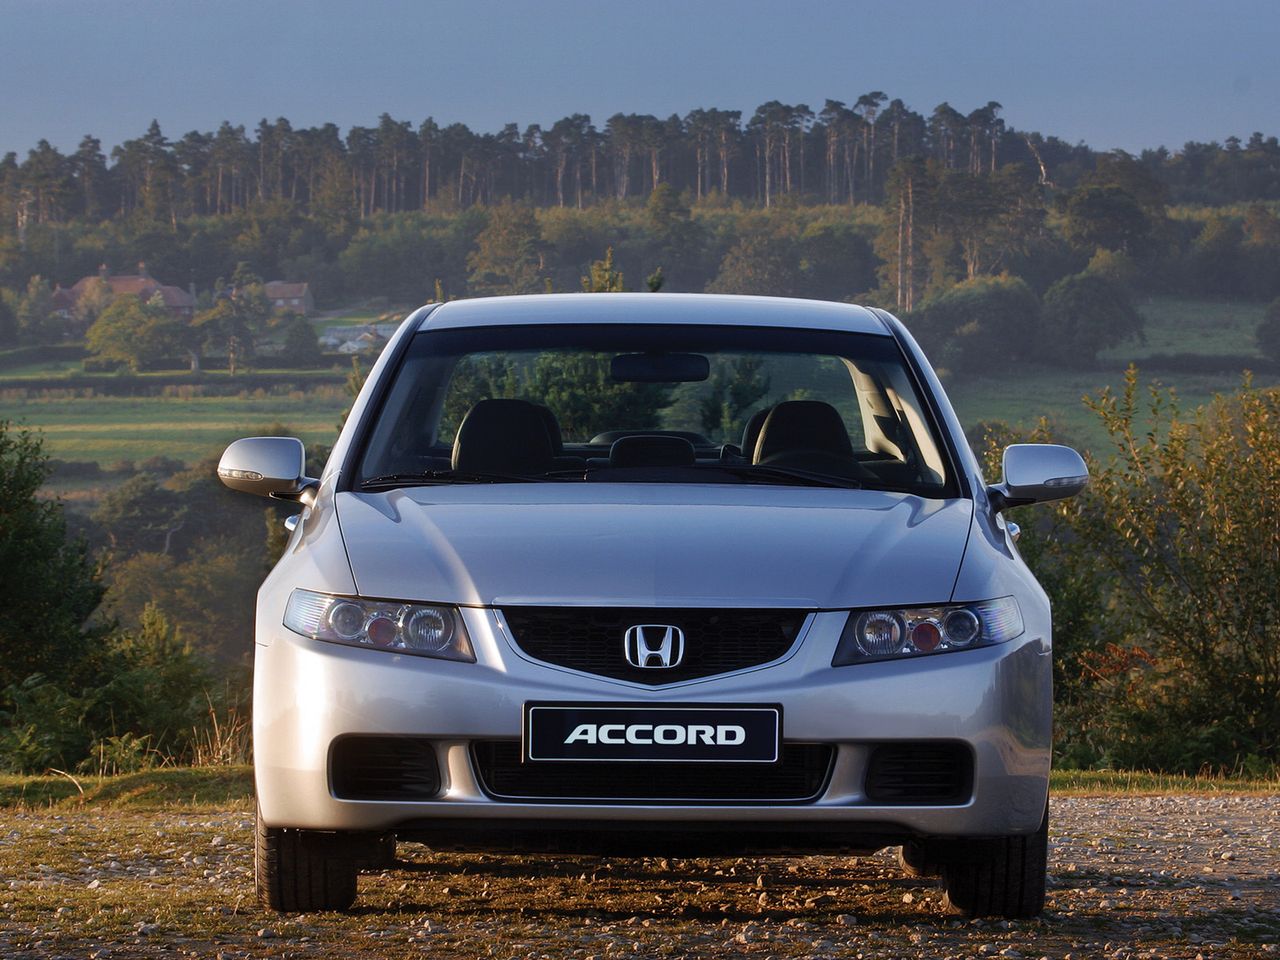 Używana Honda Accord VII z silnikiem benzynowym i-VTEC. Uwaga na minę!